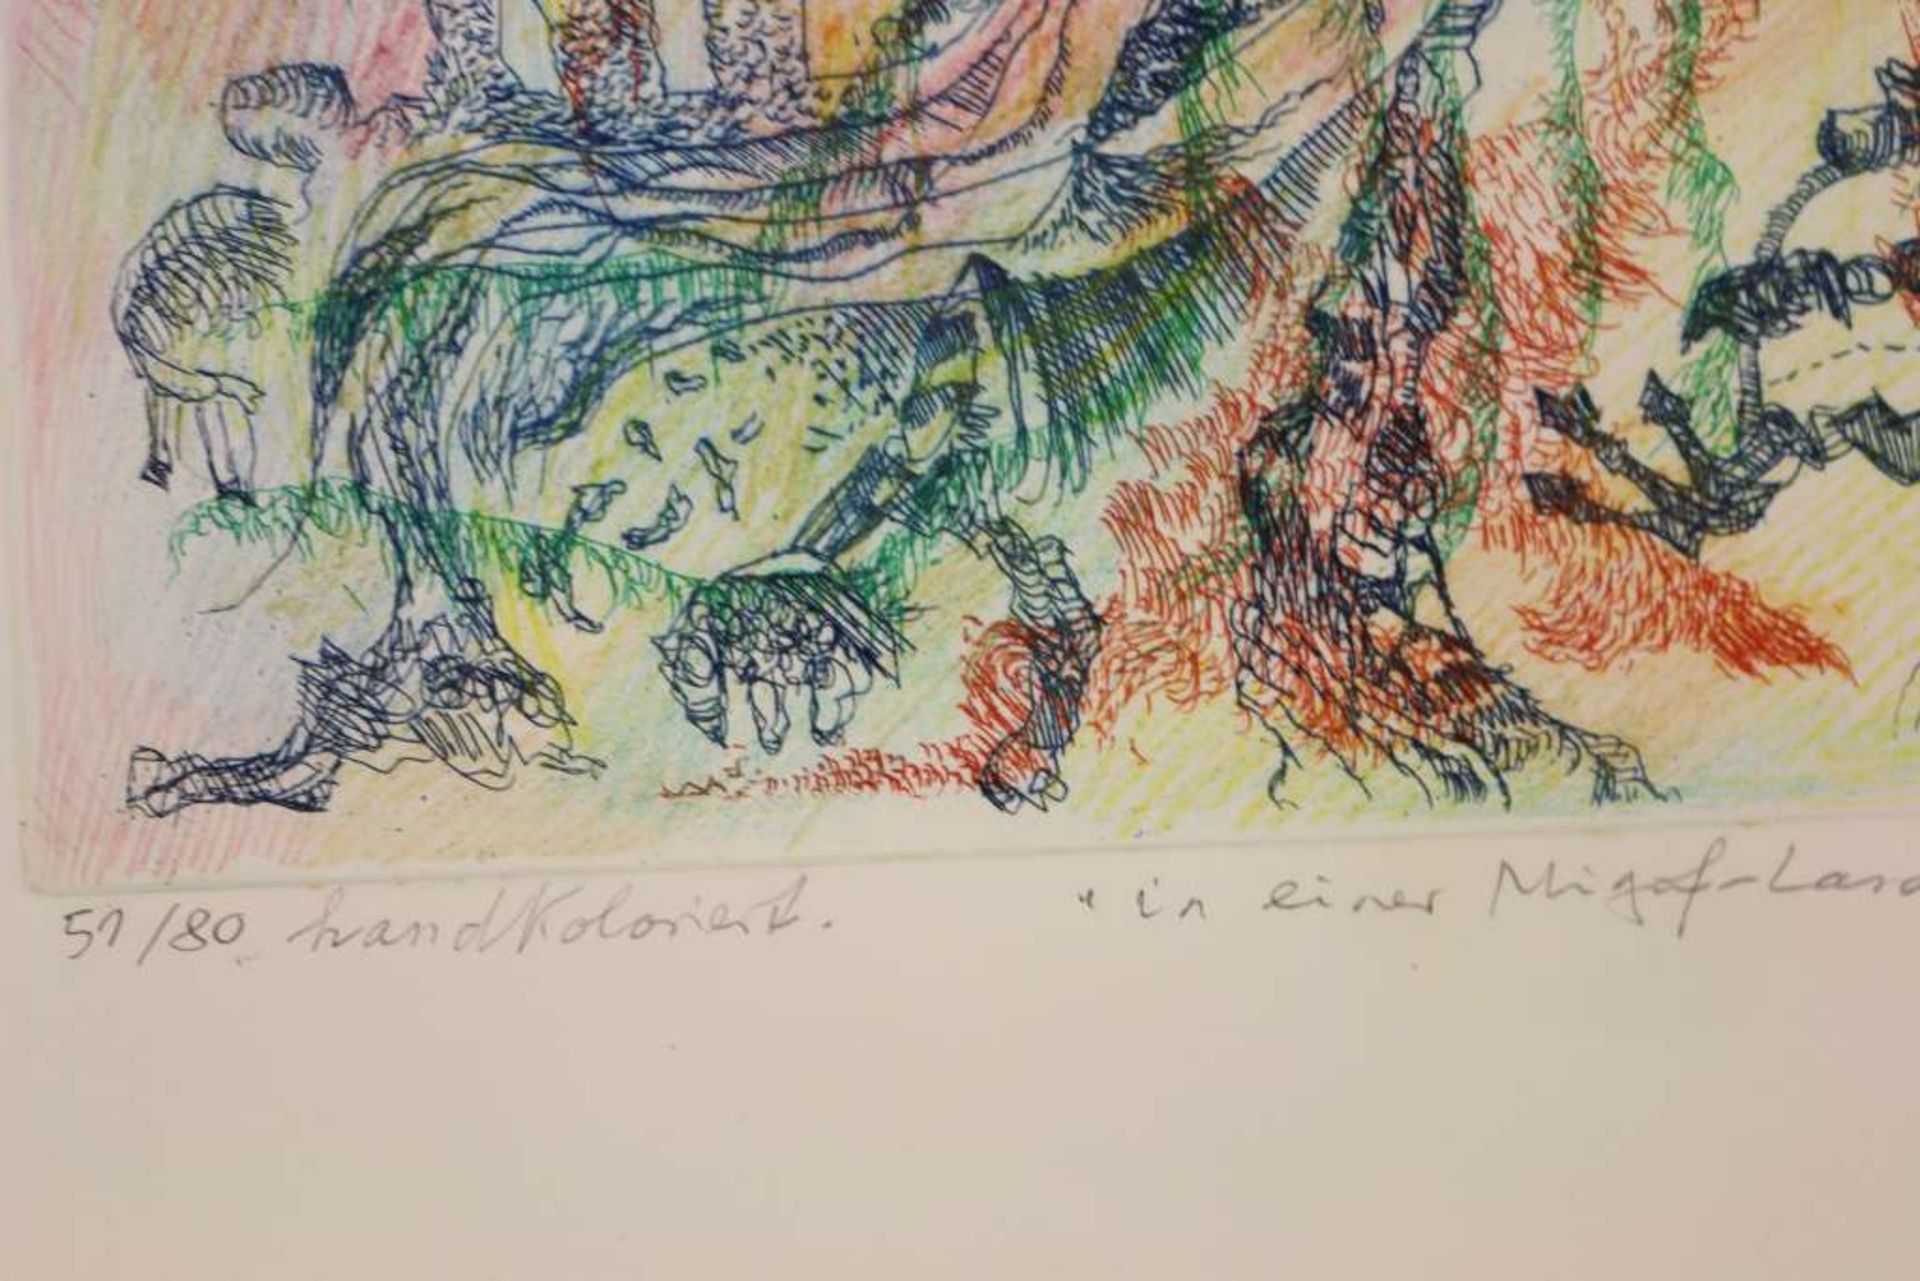 Bernard SCHULTZE (1915-2005), "In einer Migof-Landschaft", 1981, Radierung (hand coloured). Fra - Bild 4 aus 4